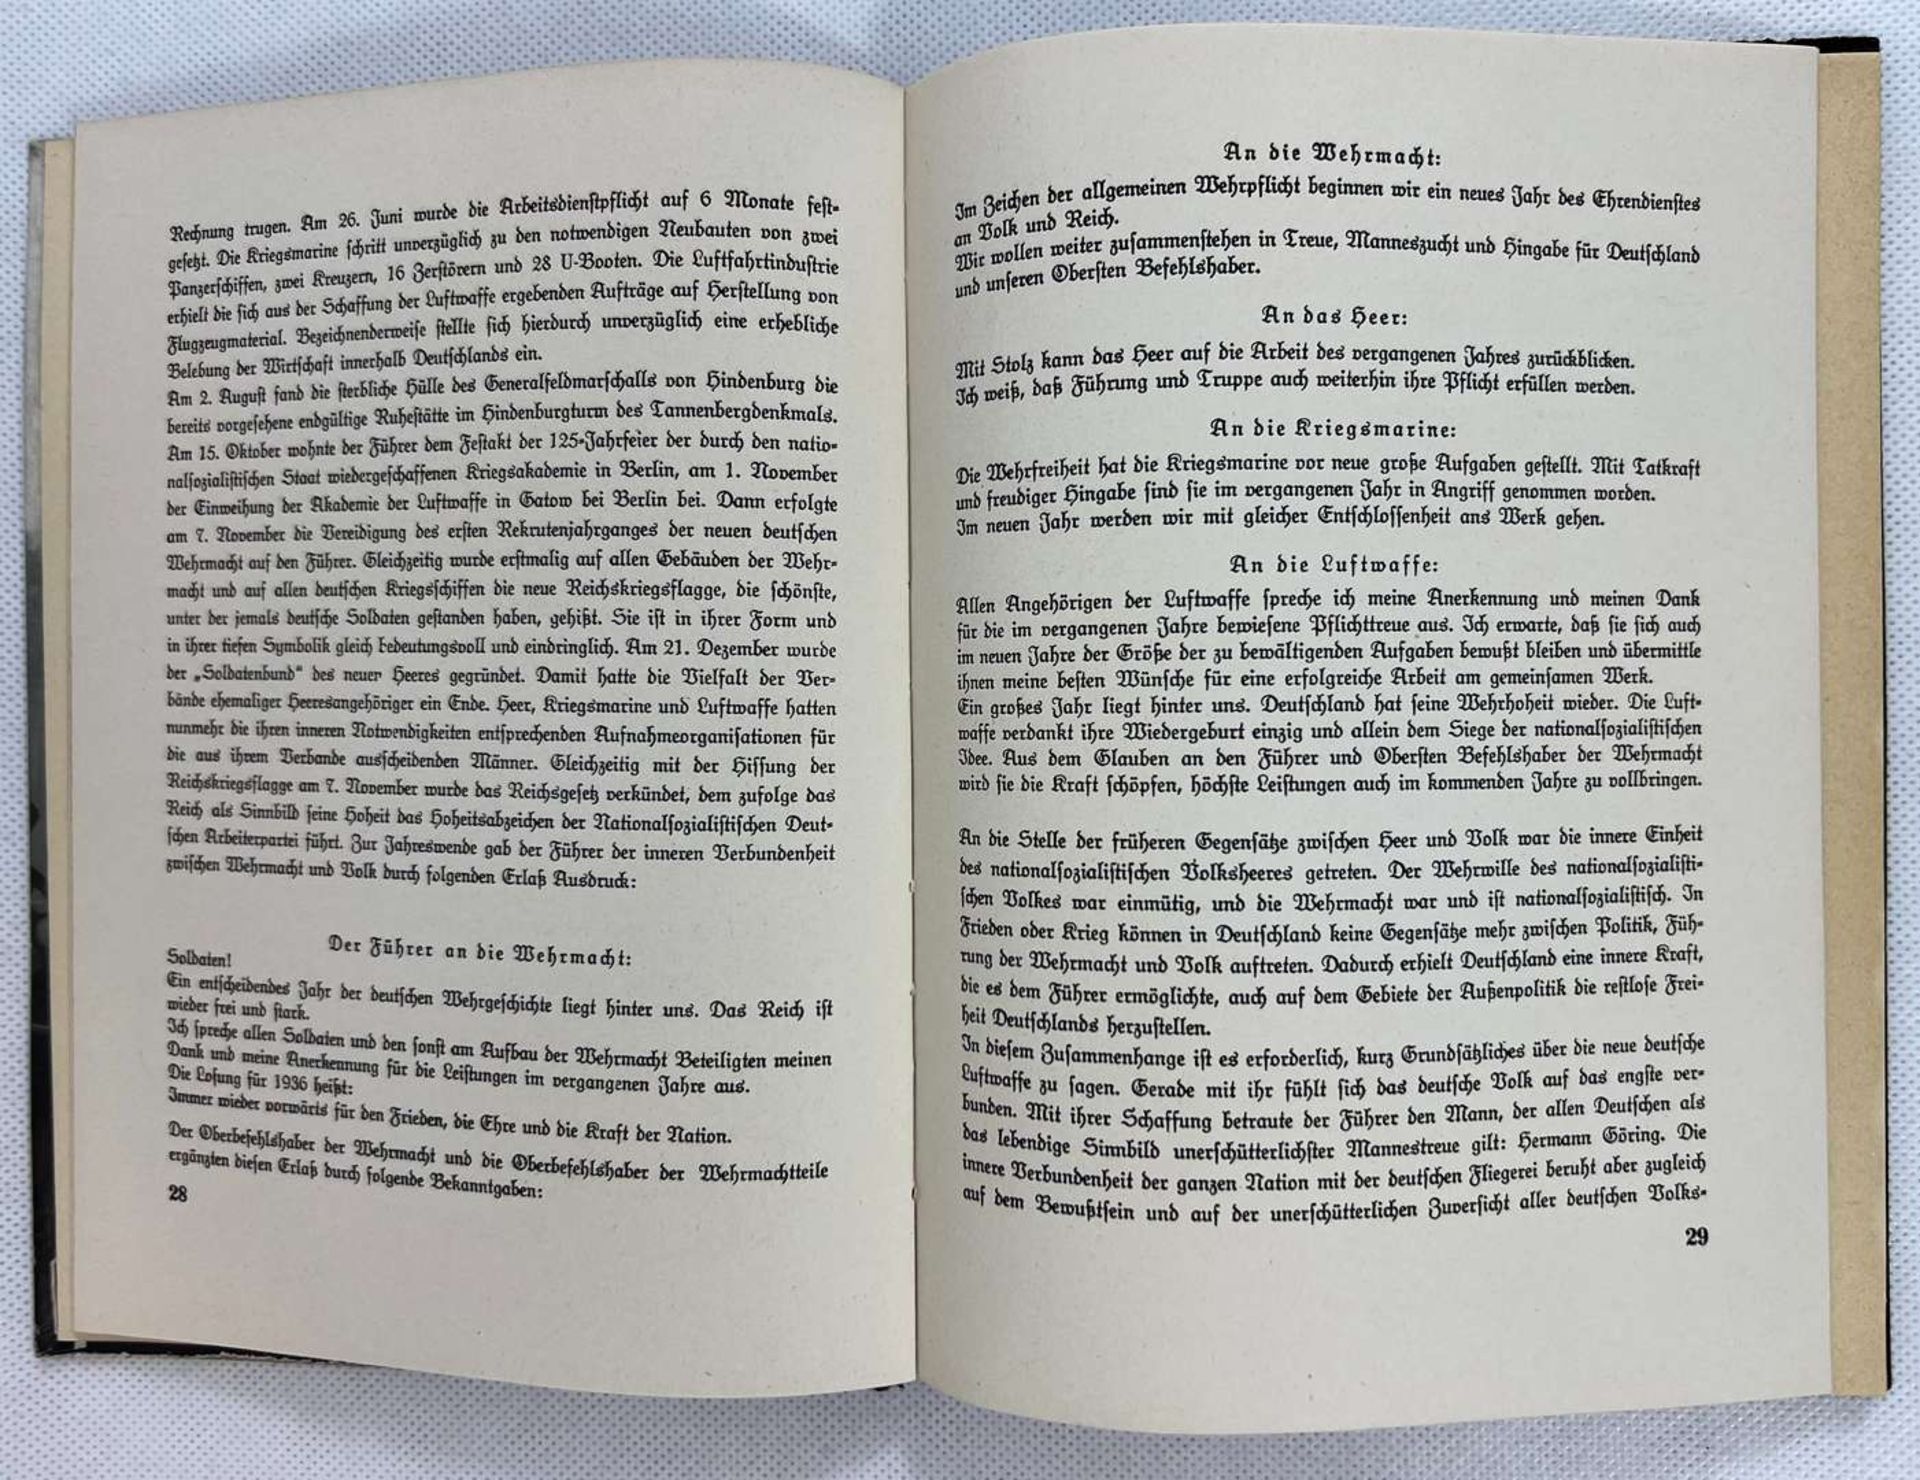 III German Reich - German Book&nbsp; “Das Jahr III”, 1936 - Image 3 of 5